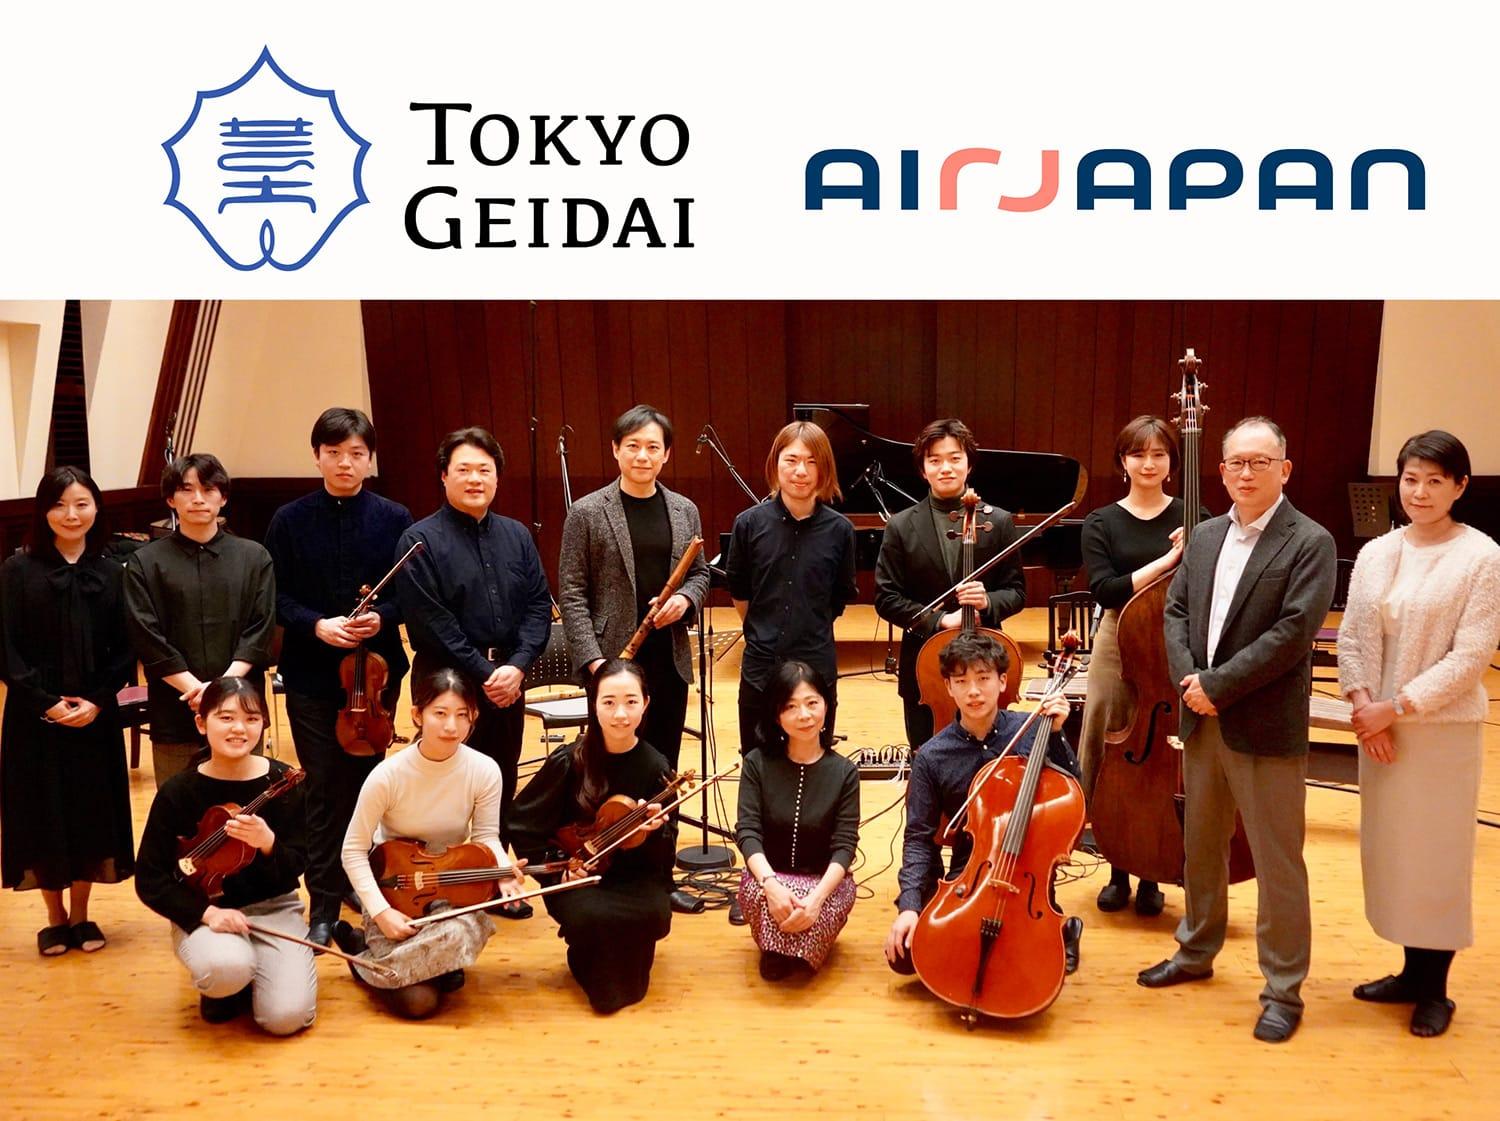 리코딩 사진: 작곡가 히야미즈 노에루 씨, 연주자 여러분, AirJapan 사원이 모여 있습니다.